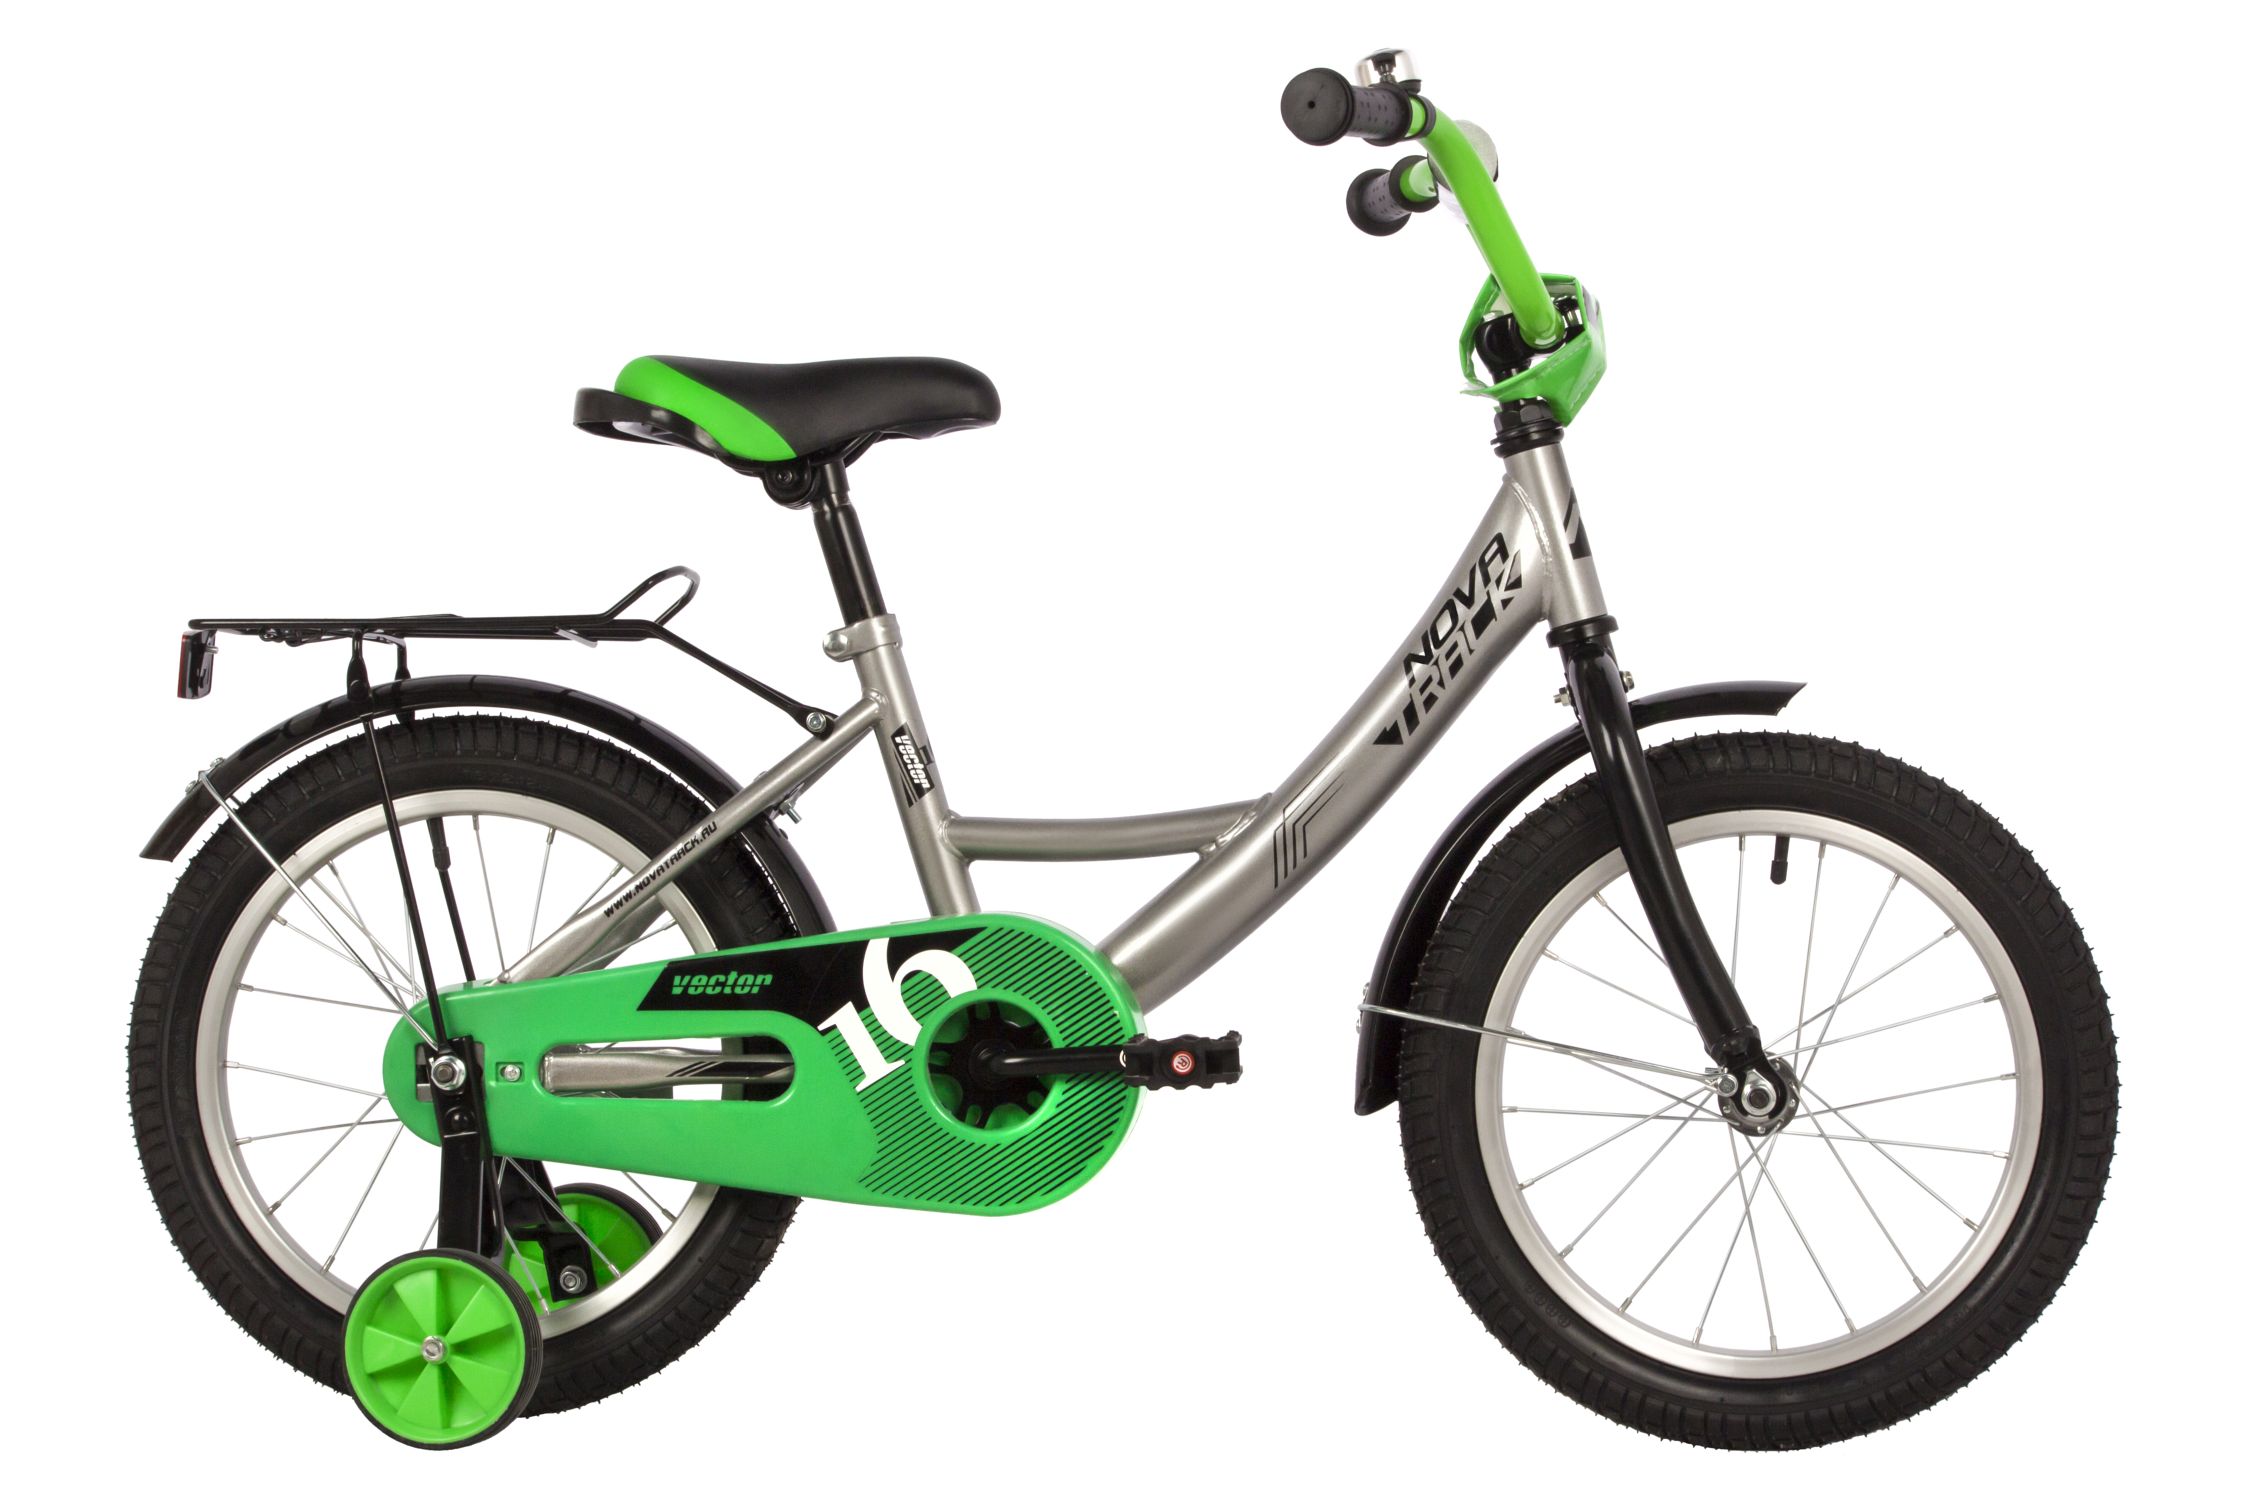  Отзывы о Детском велосипеде Novatrack Vector 16 2022